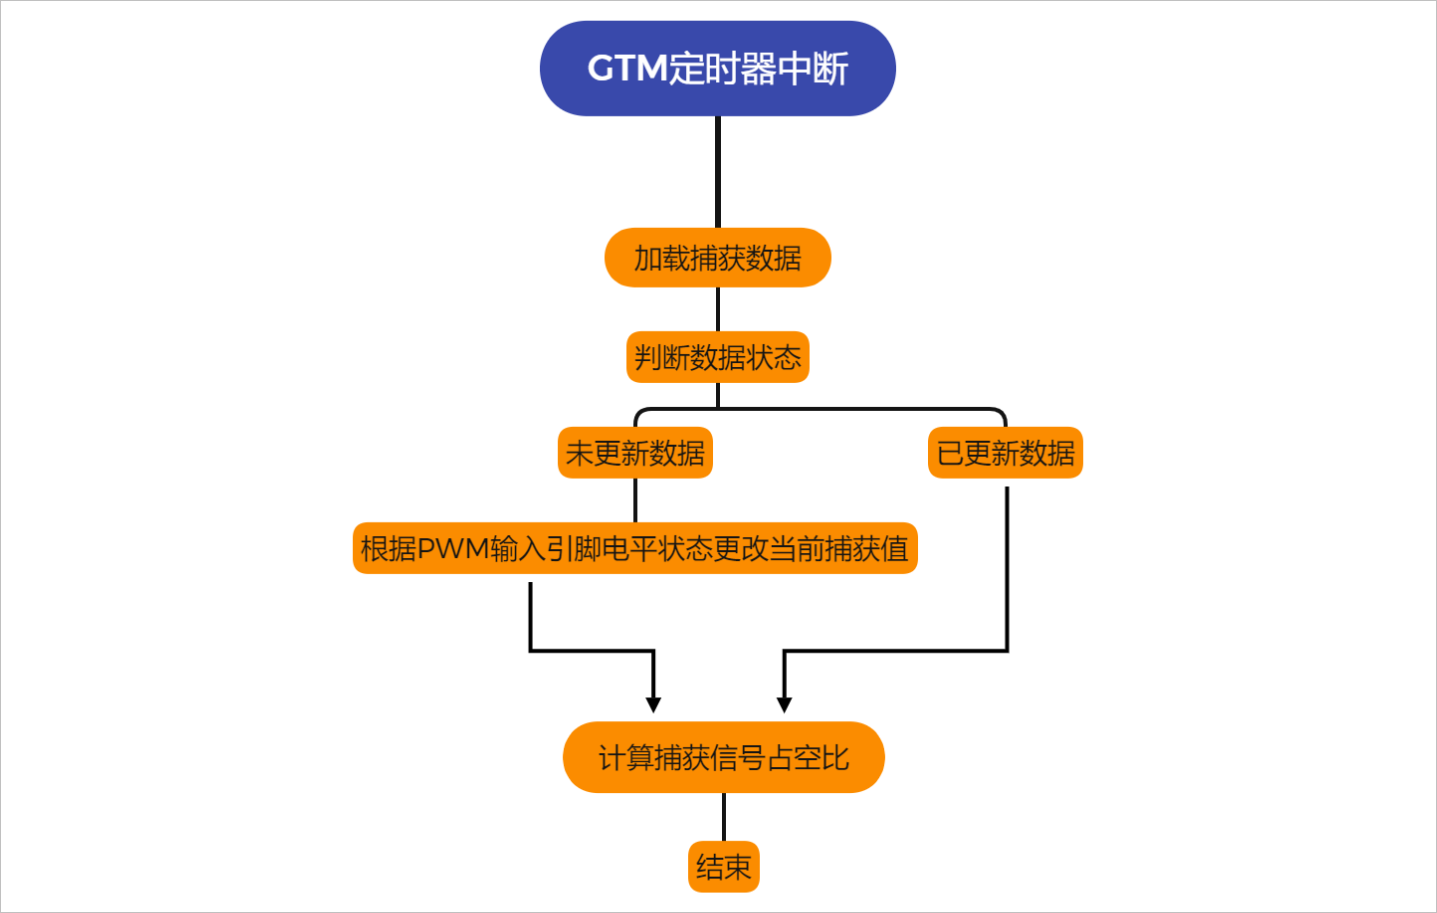 ▲ 图5.4.1 GTM 定时器中断工作流程图